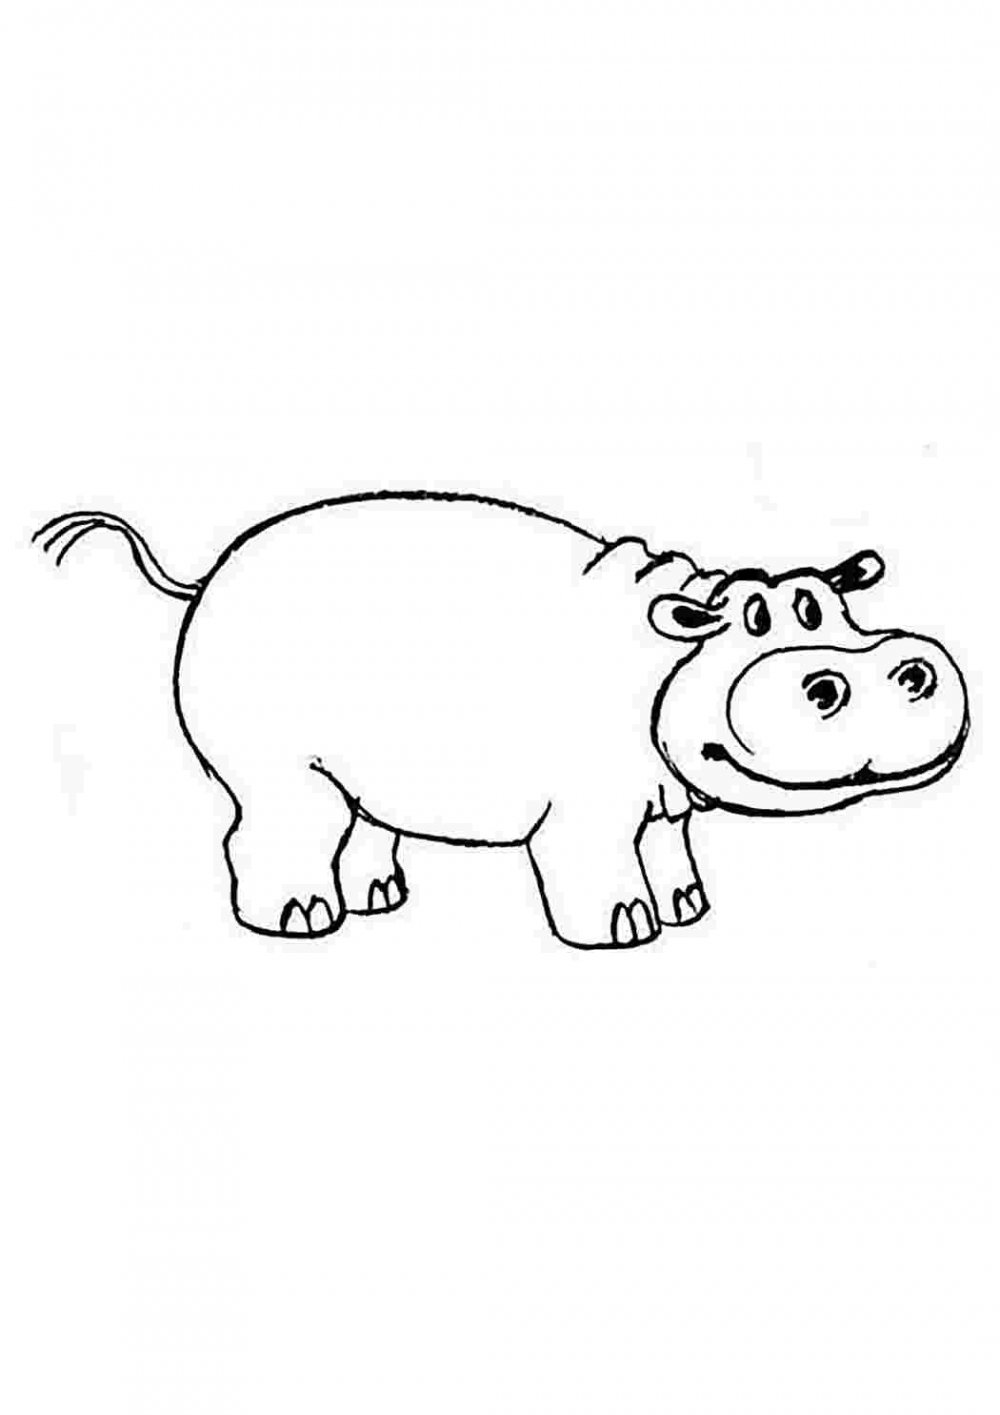 The Hippos Family мультфильм раскраска